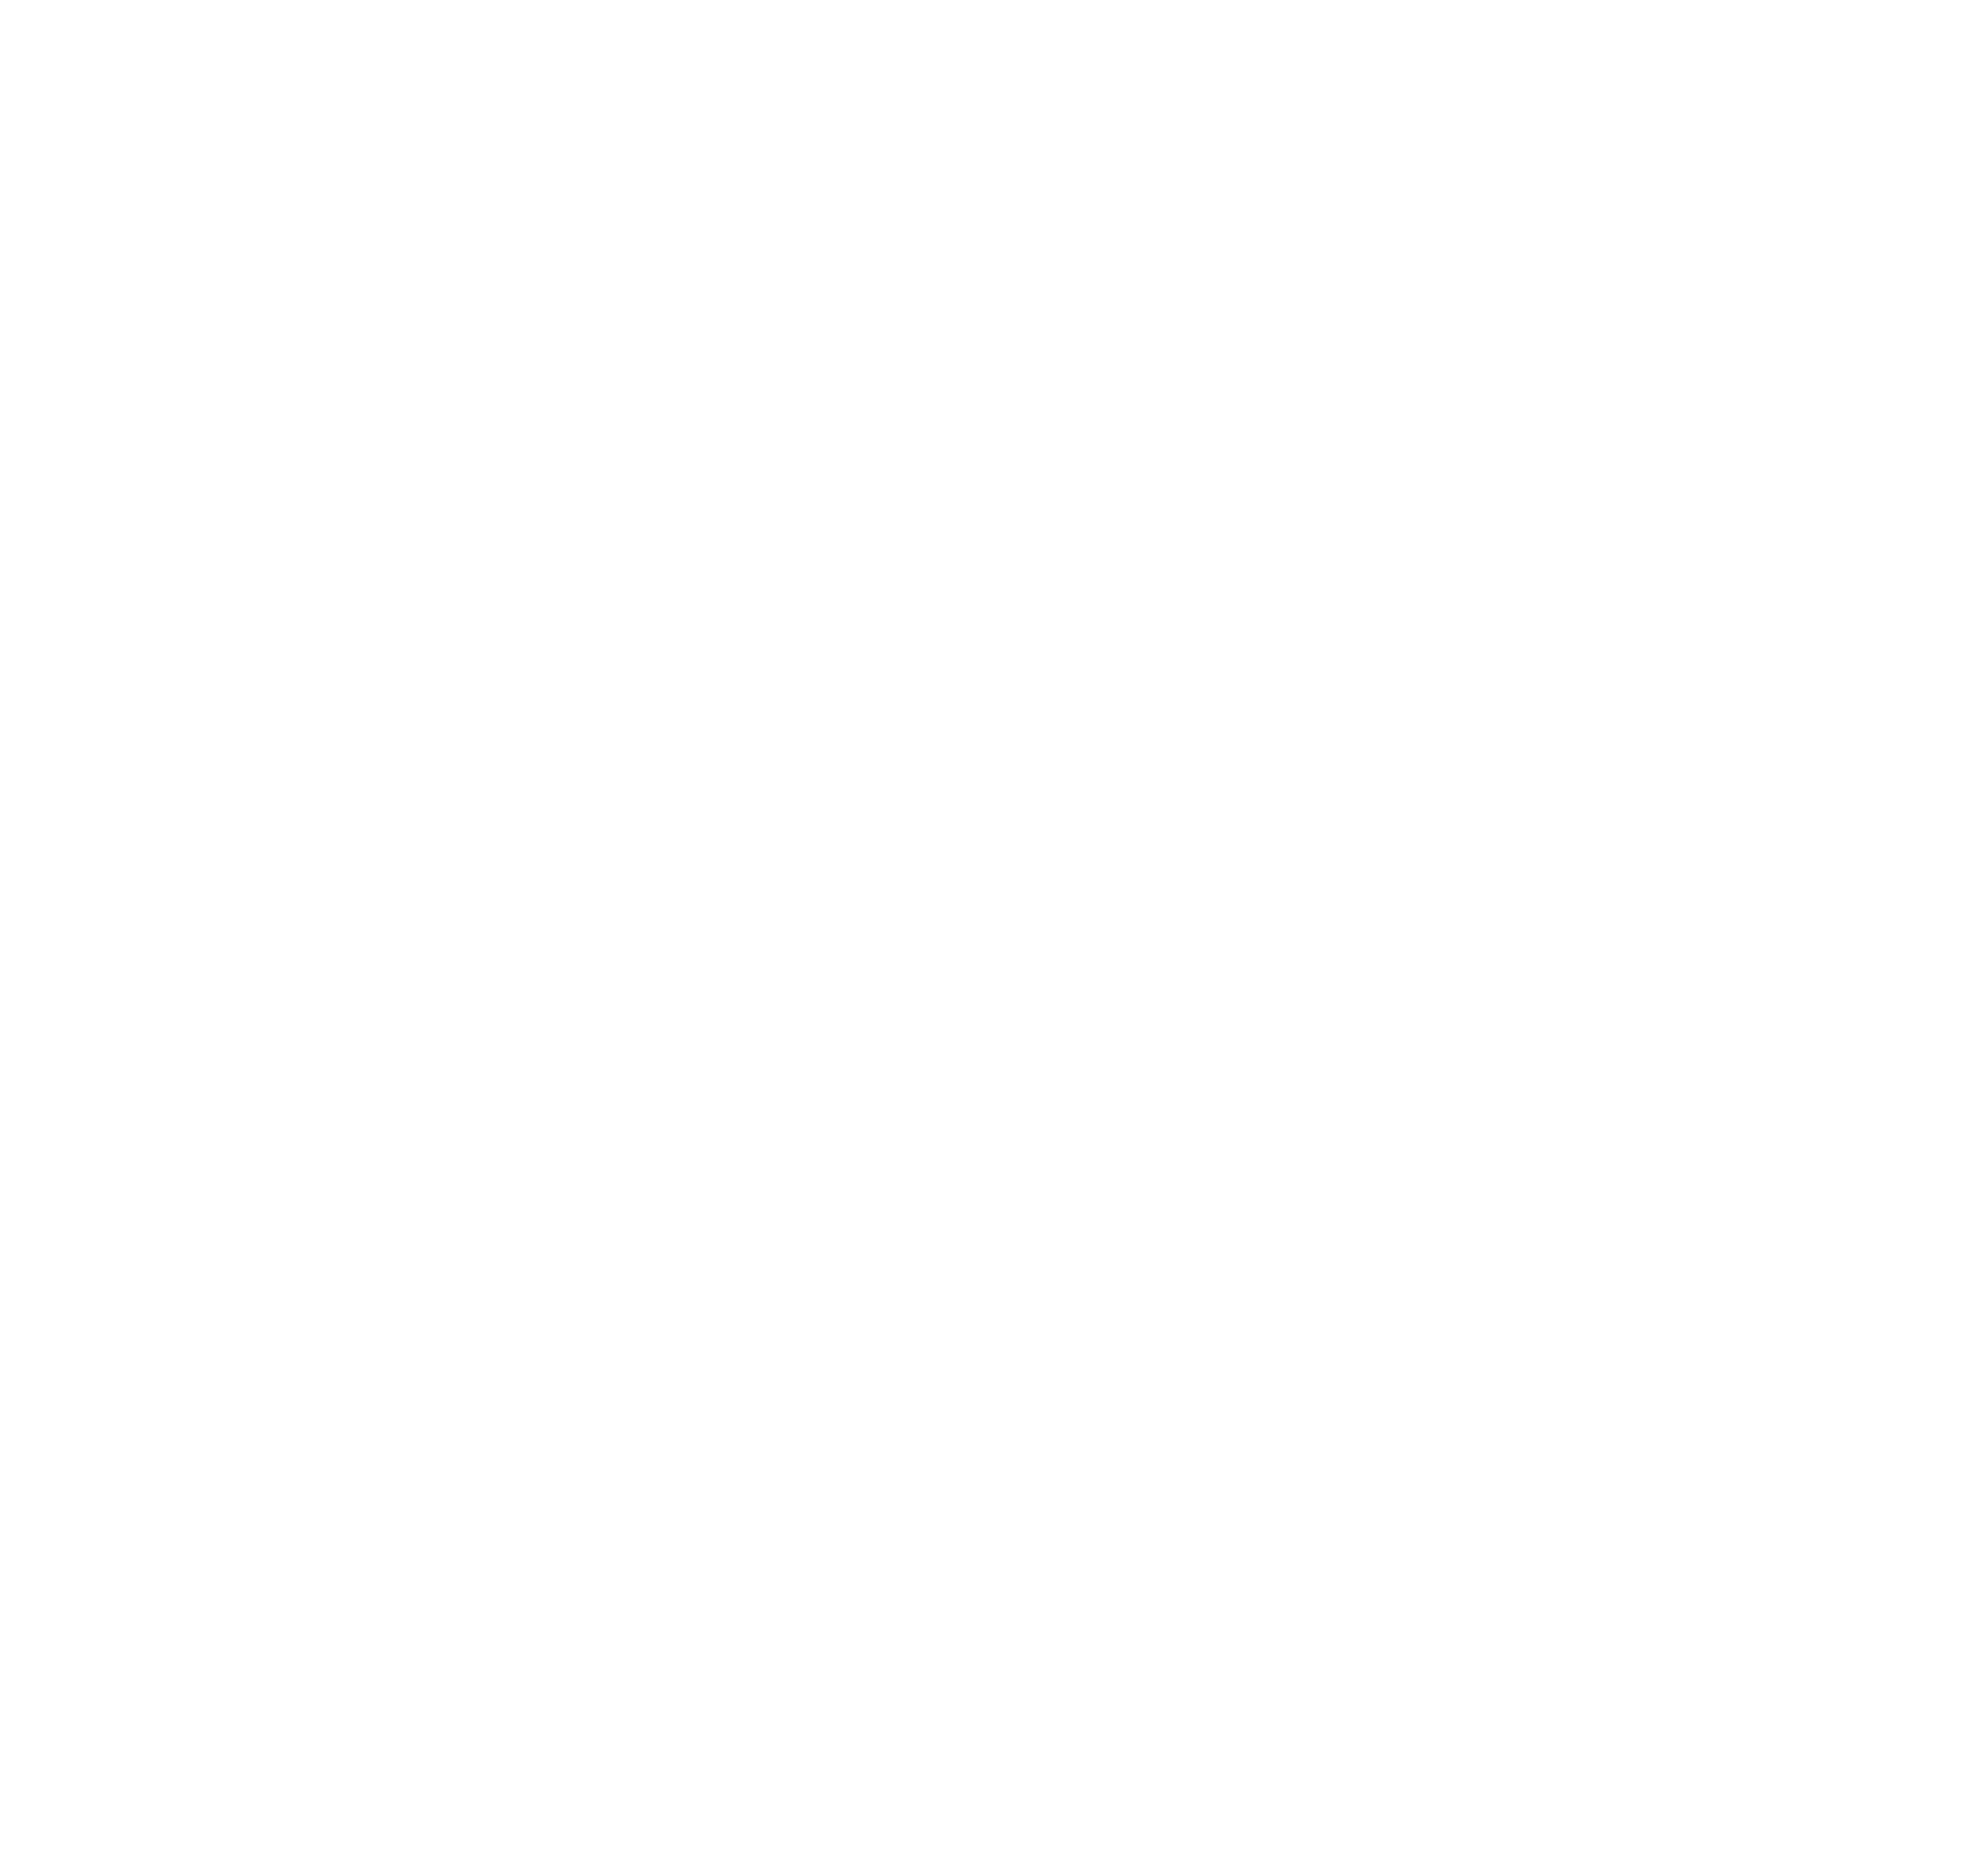 NWCM